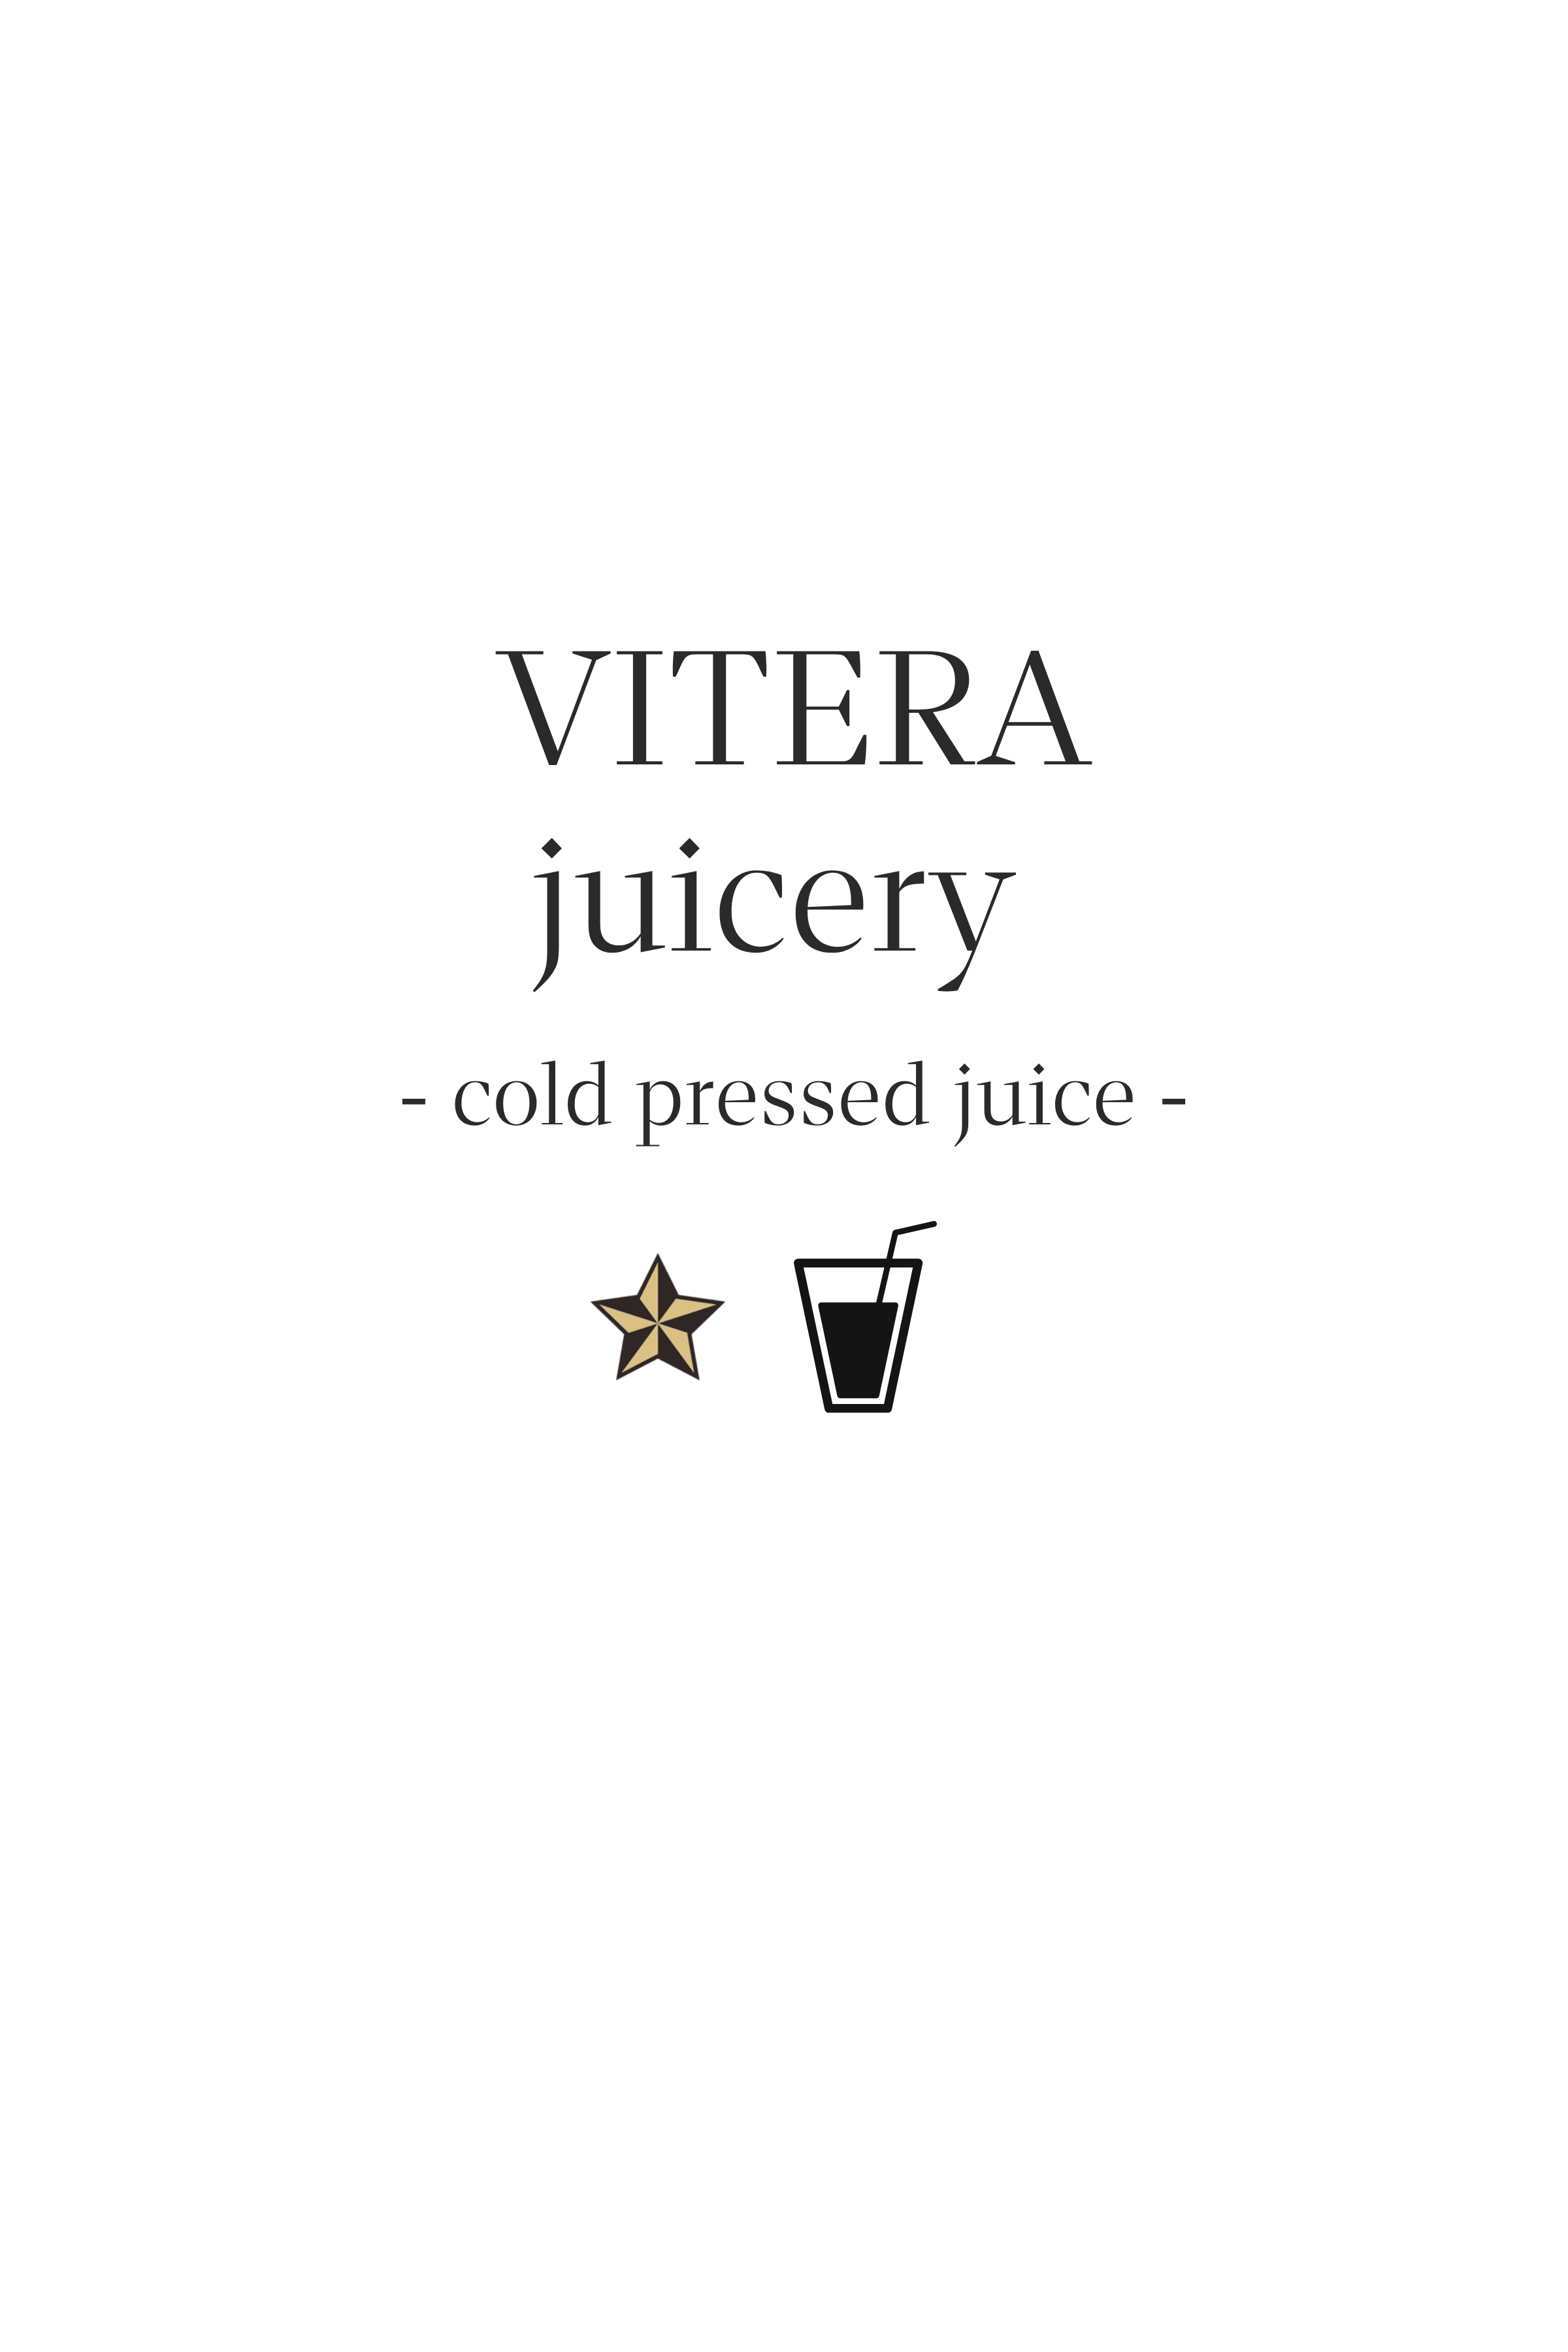 VITERA juicery